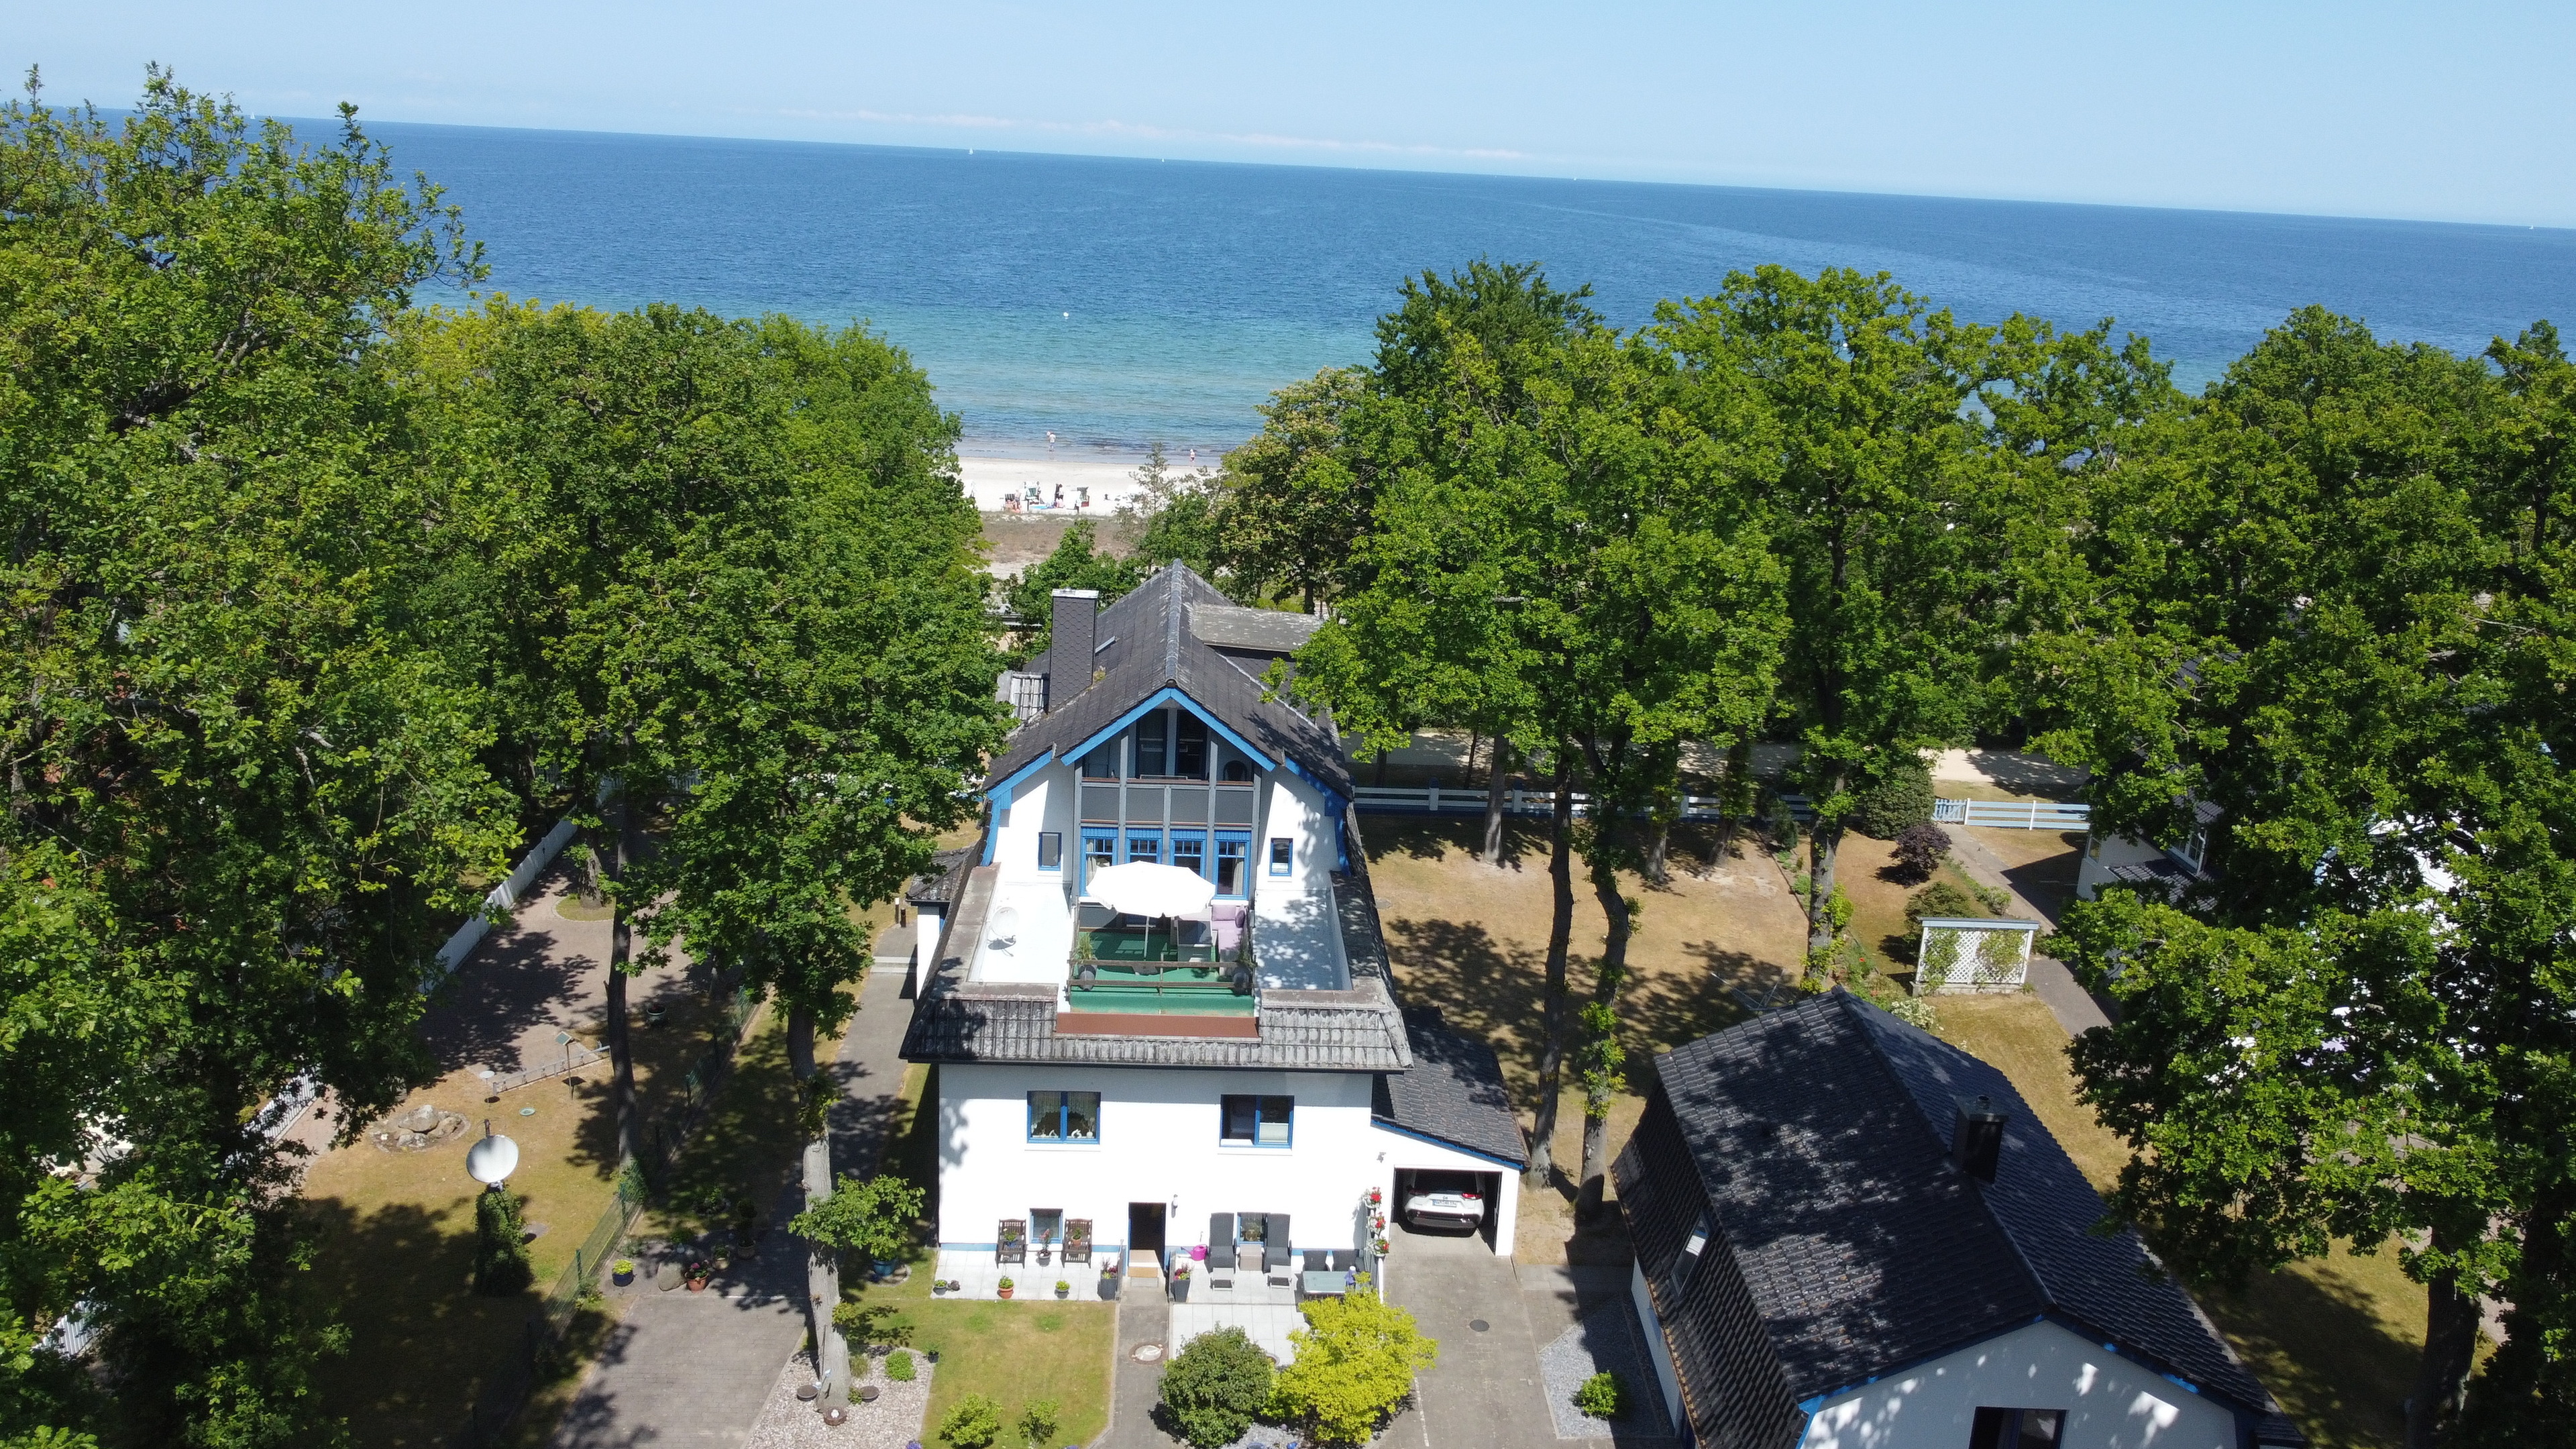 Strandhaus Seeperle, Whg. Seerose Ferienwohnung an der Ostsee